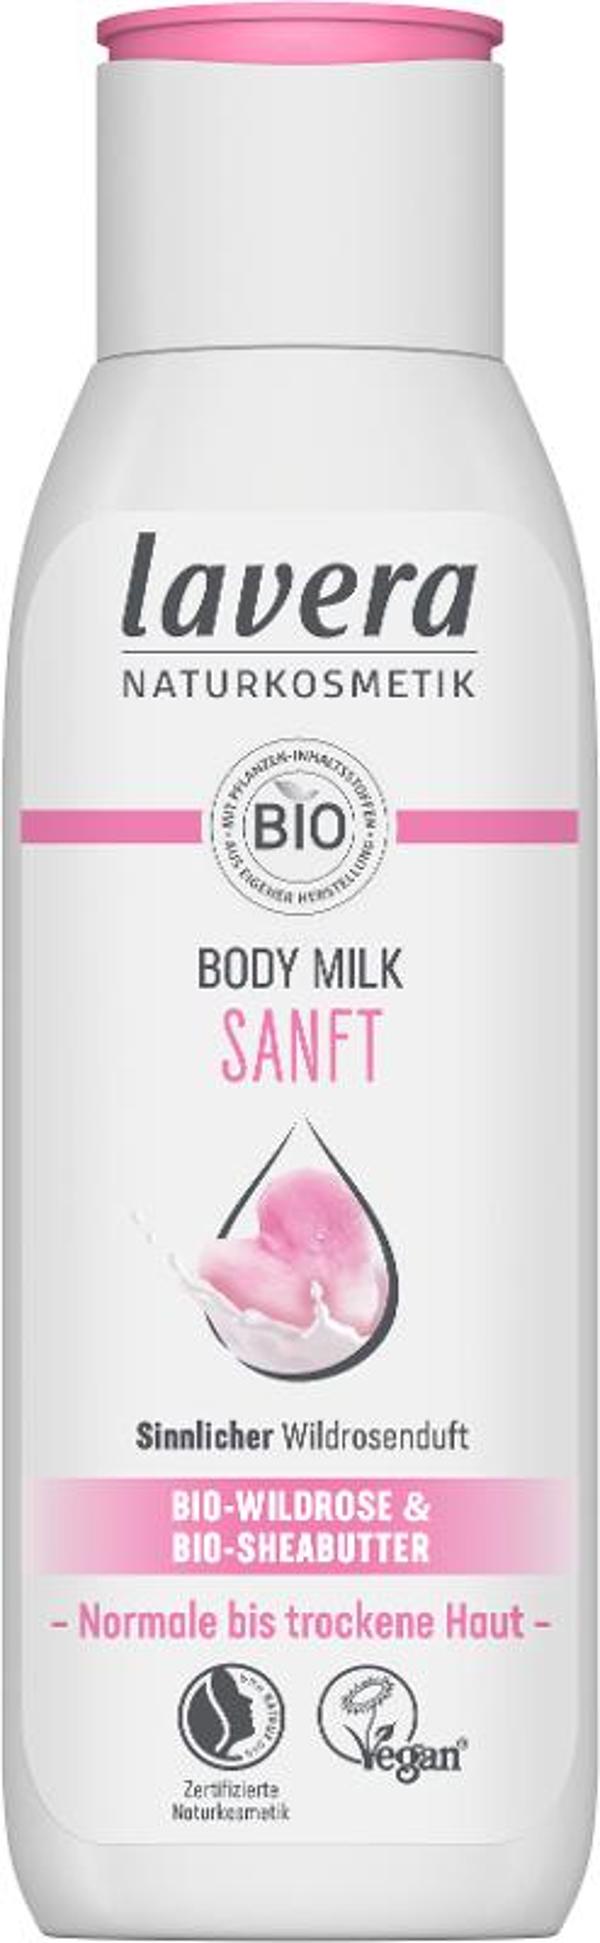 Produktfoto zu Bodylotion Sanft, 200 ml